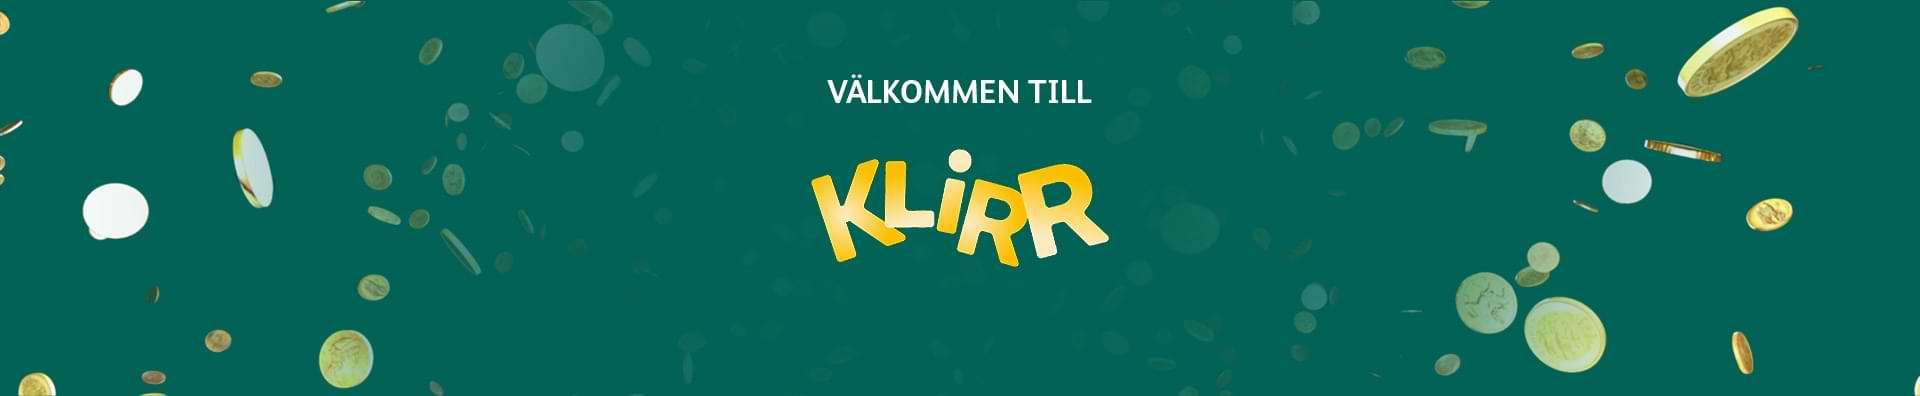 Gron banner med mynt och gul text Klirr Sverige recension